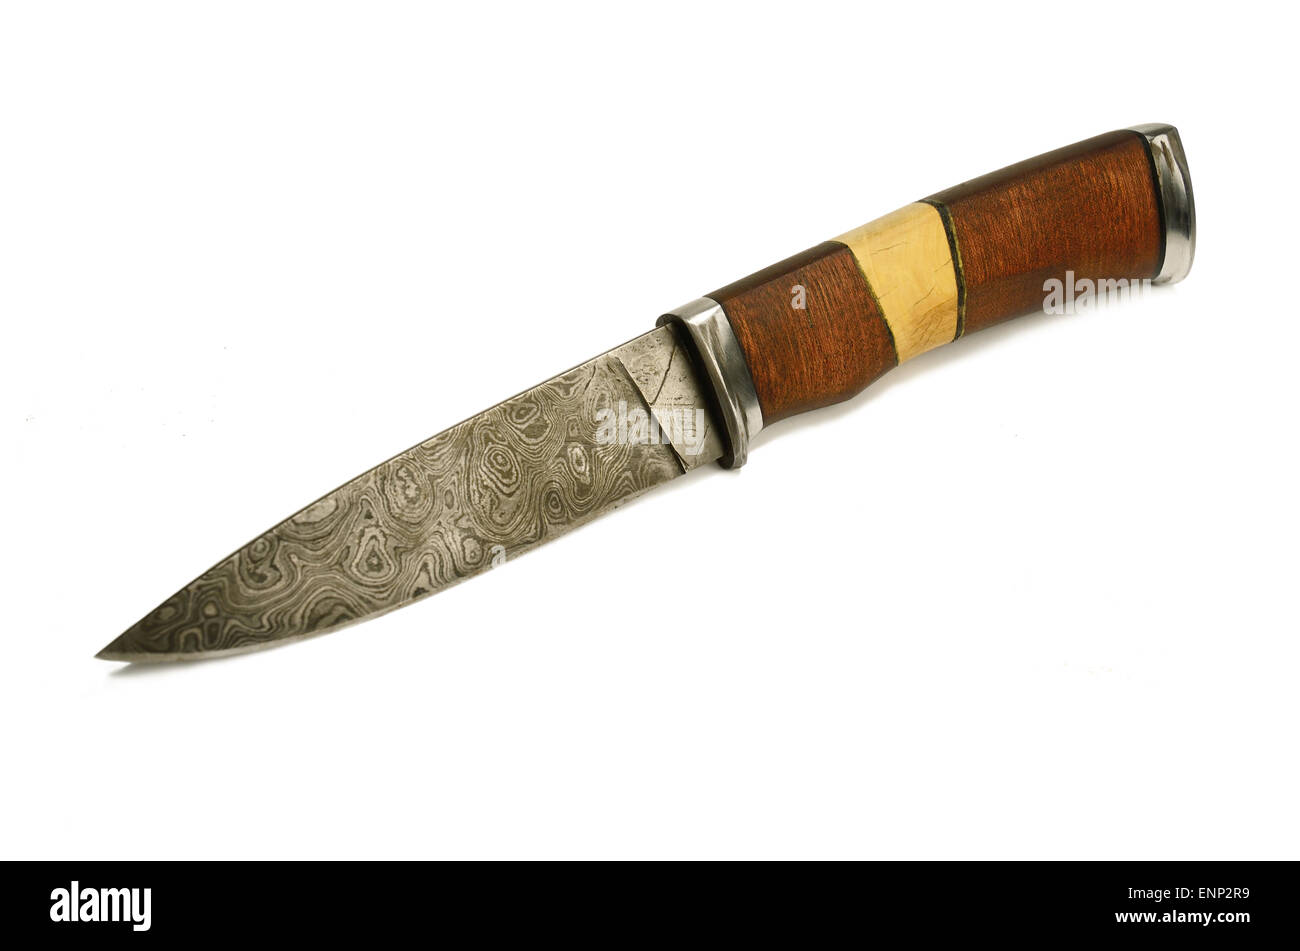 Vieux couteau de l'acier Damas - métal forgé,utilisé traditionnellement pour la création d'armes à froid sur le Moyen-Orient Banque D'Images